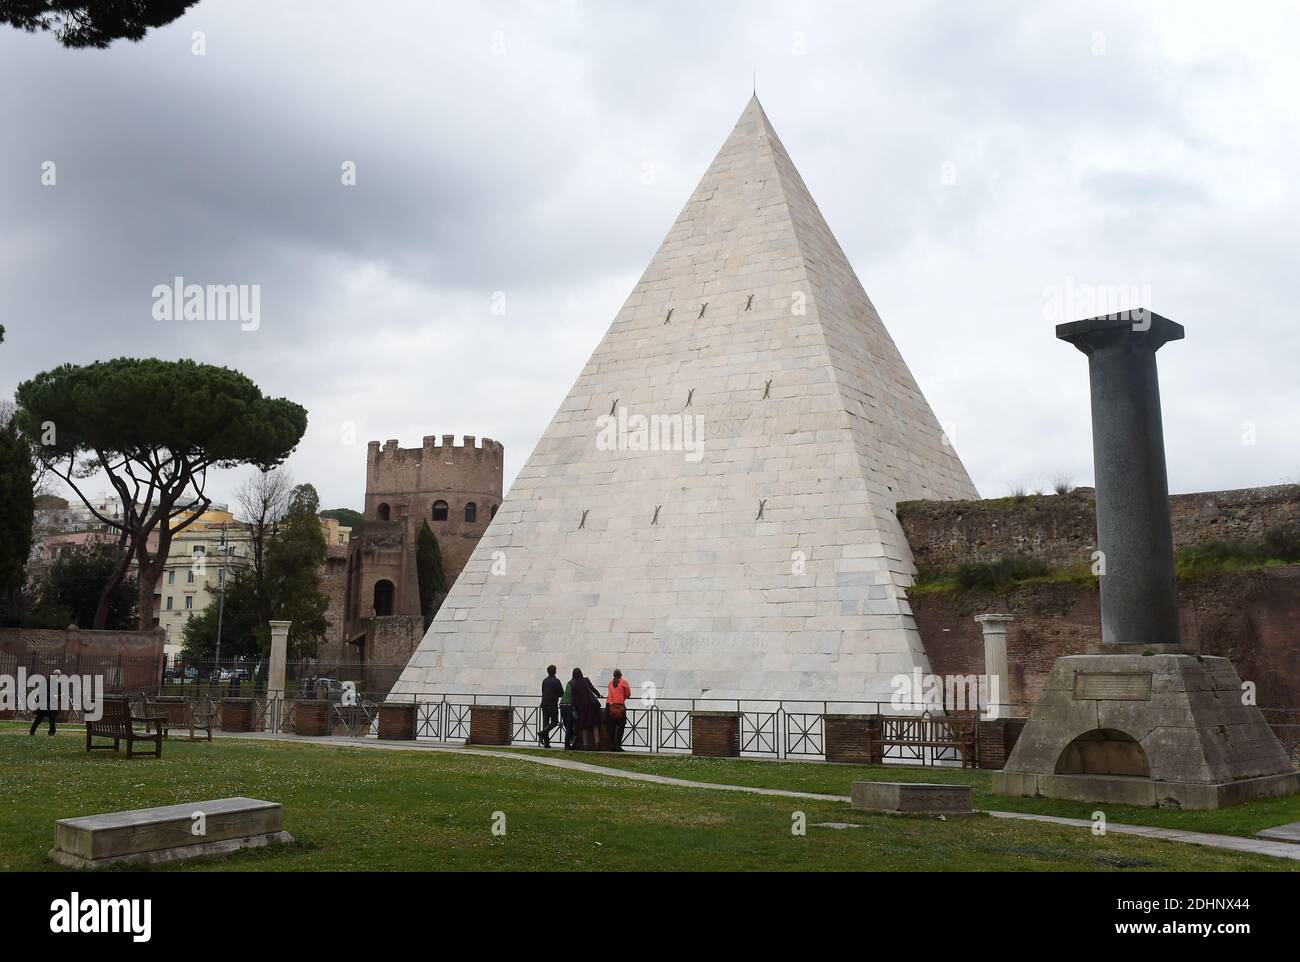 Una veduta della Piramide restaurata di Cestio a Roma il 3 febbraio 2016.  L'unica piramide sopravvissuta della città eterna, risalente alla conquista  dell'Egitto, sembra attrarre più visitatori dopo un'estesa pulizia  finanziata dal